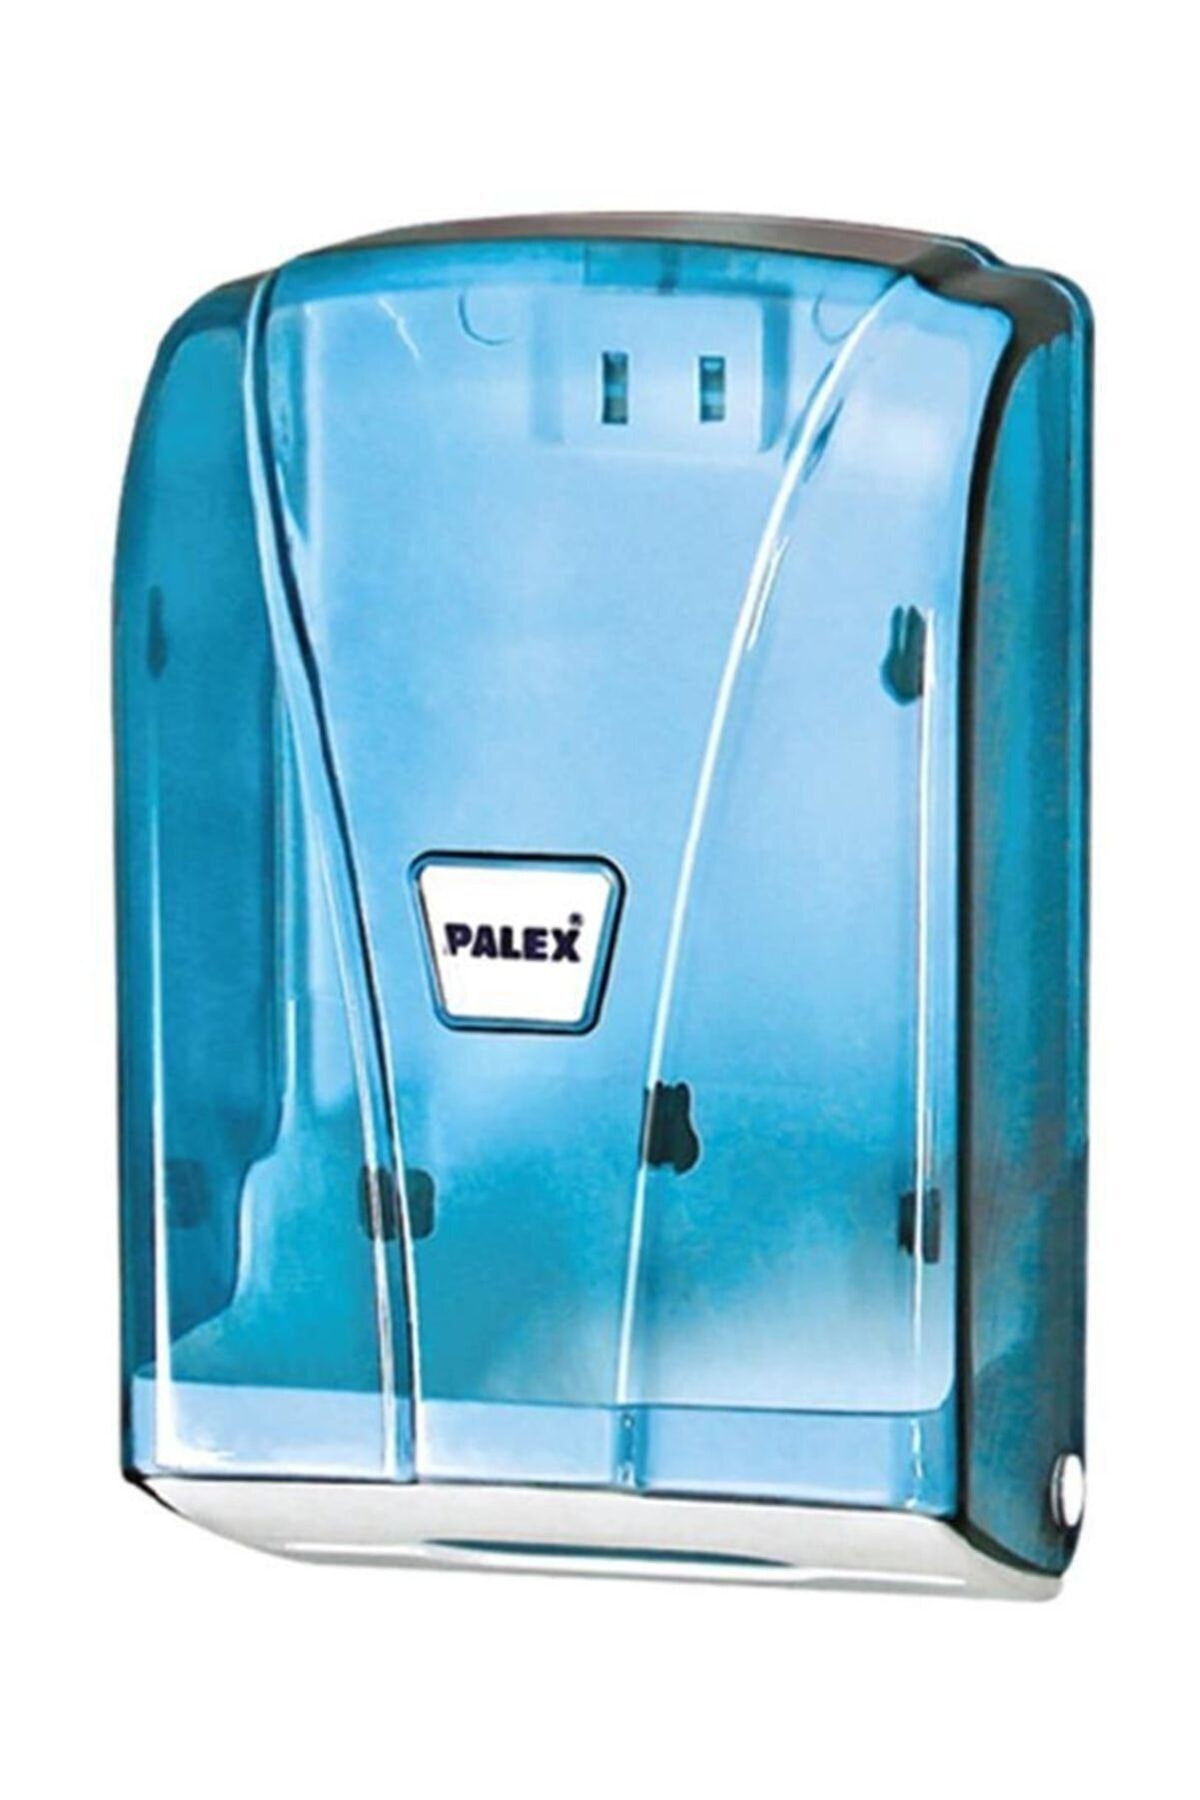 Palex (ün-ev) C Katlama Tuvalet Kağıtlığı (tuvalet Kağıt Dispenseri) Şeffaf-mavi 3438-1